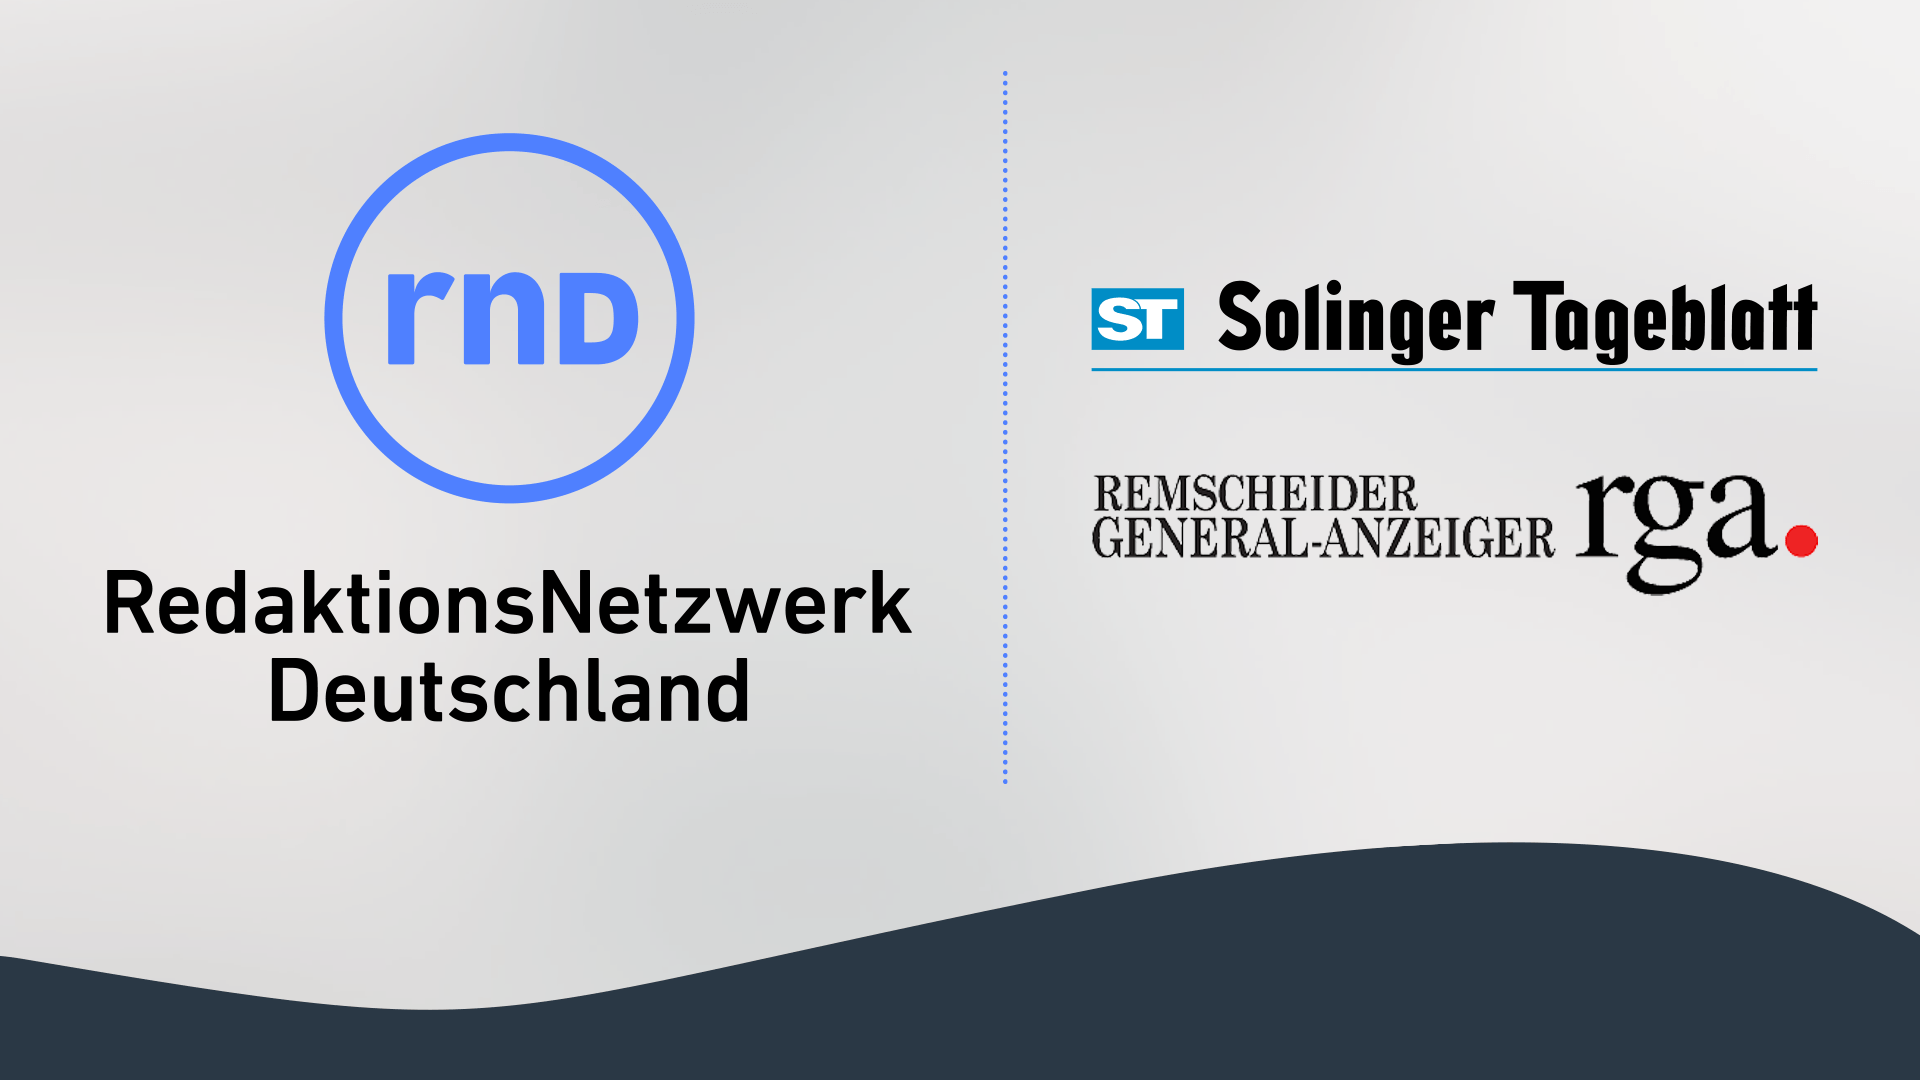 "Solinger Tageblatt" und "Remscheider General-Anzeiger" werden Teil der RND OnePlatform